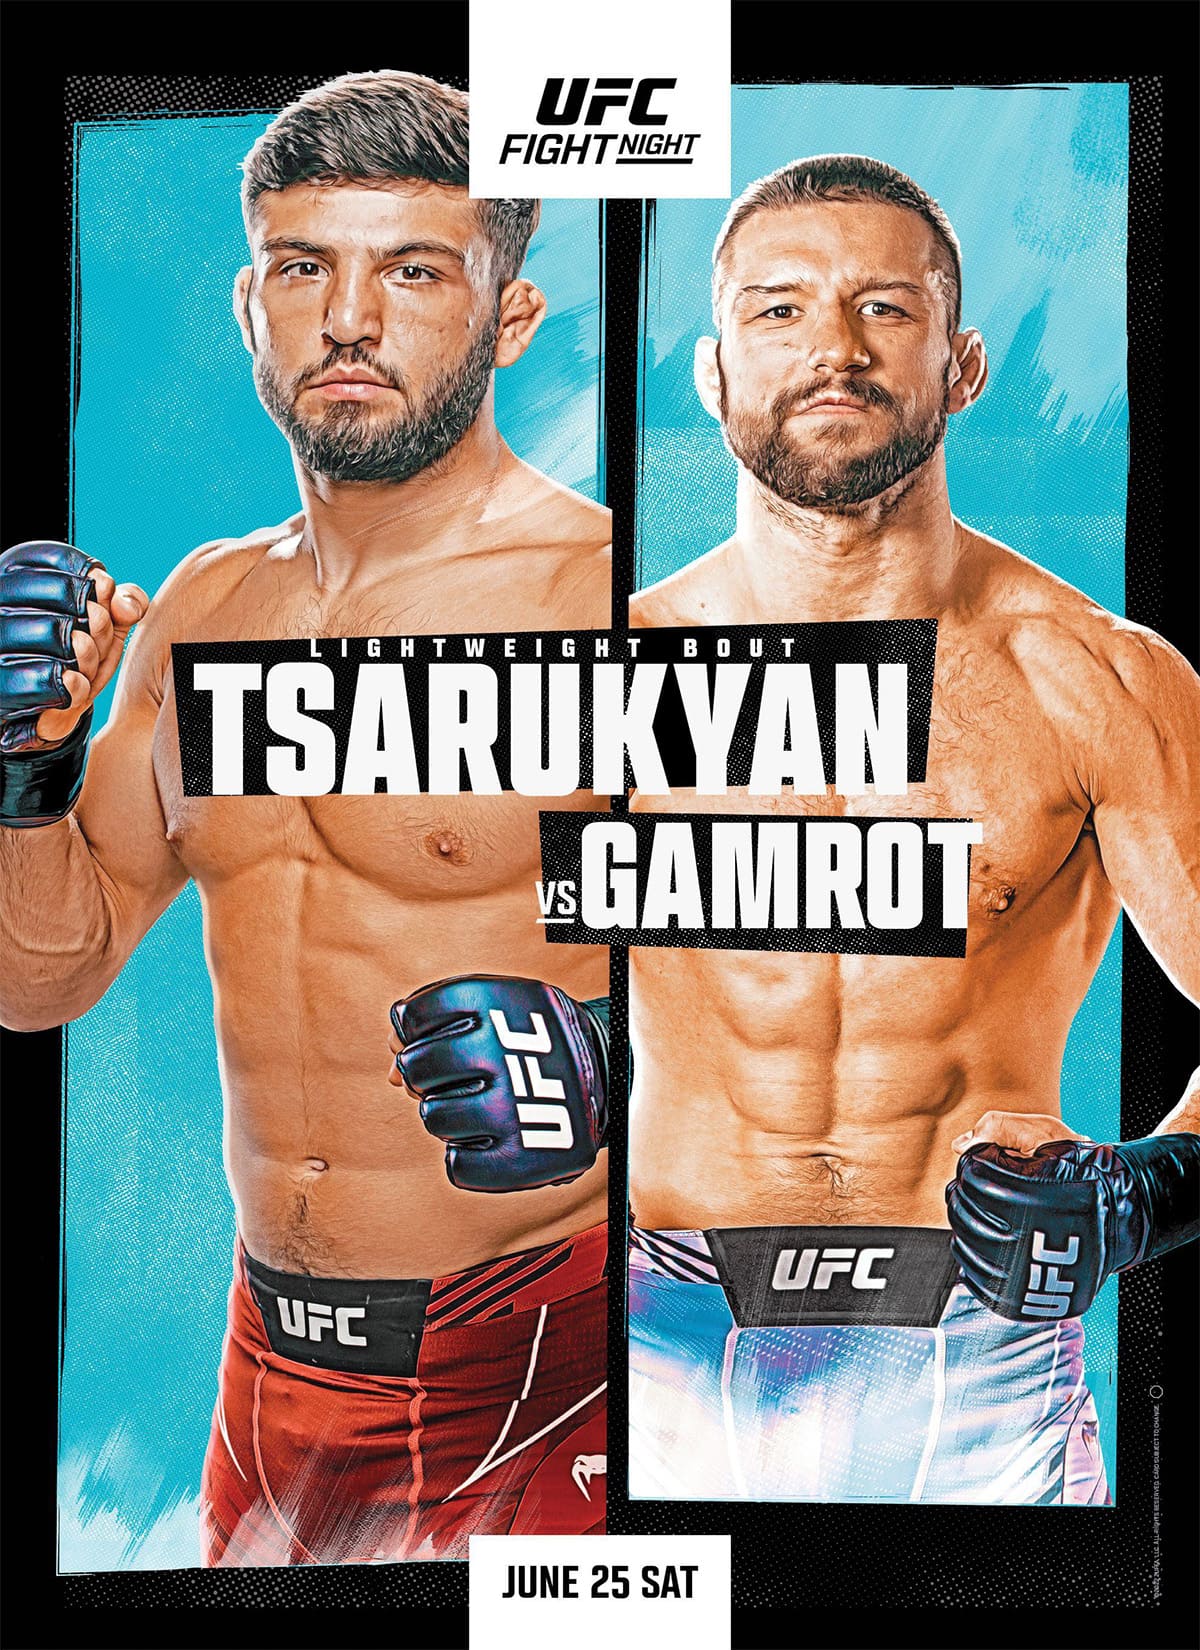 UFC on ESPN 38: Царукян - Гамрот дата проведения, кард, участники и результаты